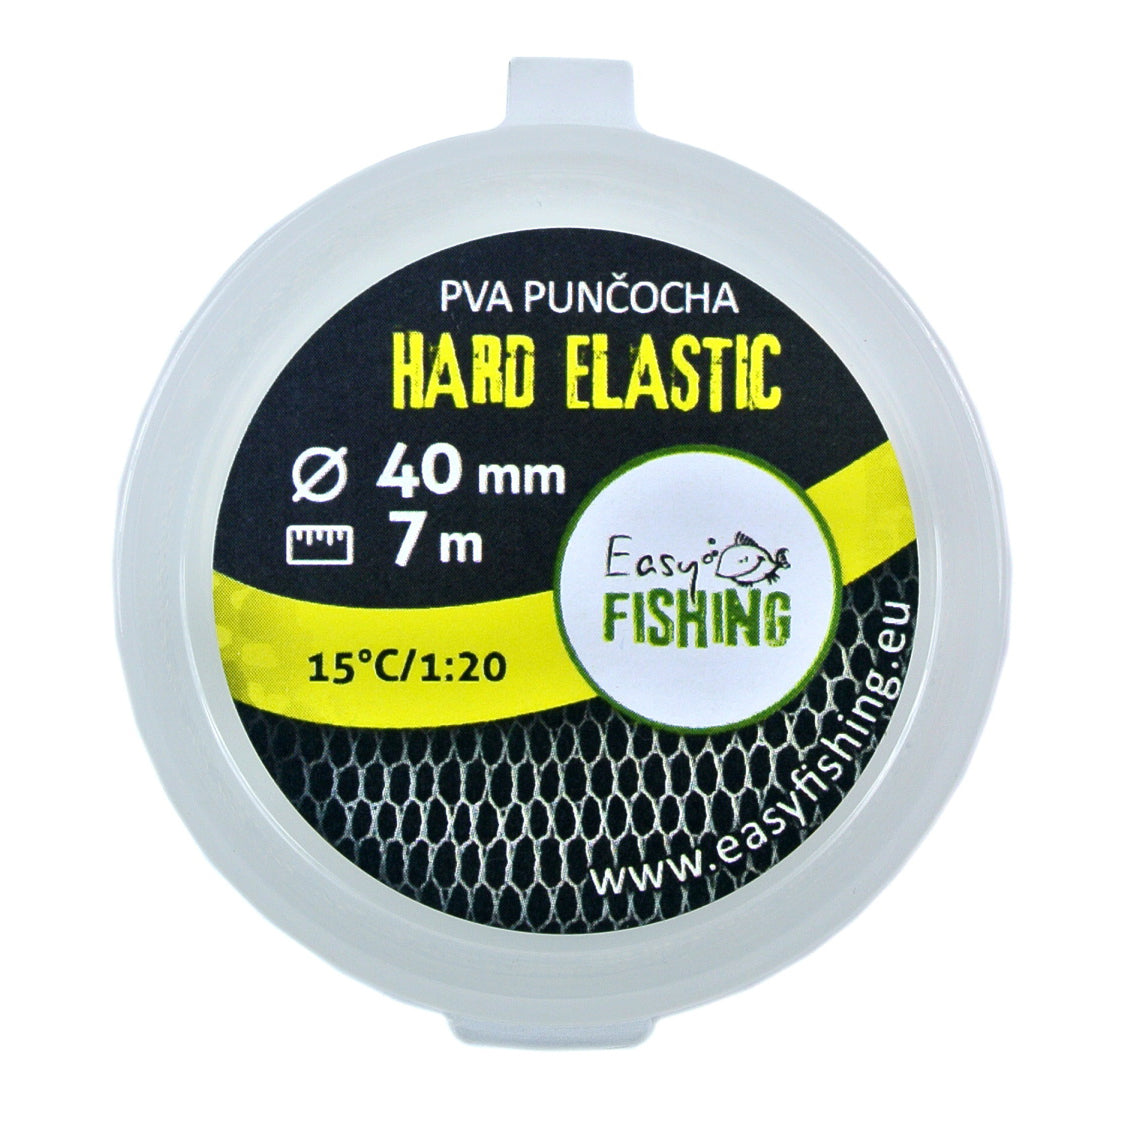 EasyFISHING 7m náhradní PVA punčocha ELASTIC HARD